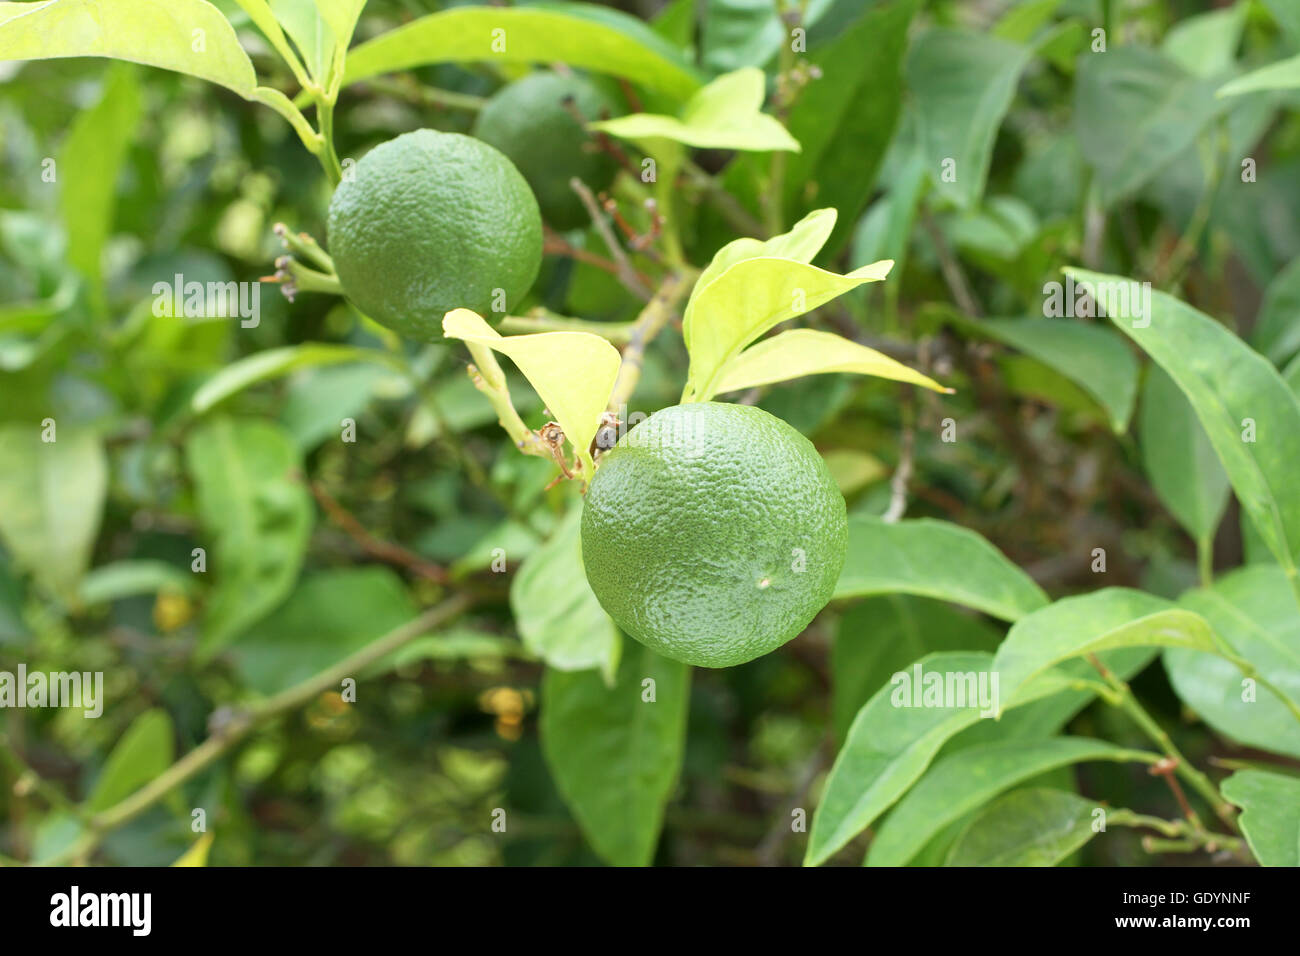 Immature green Yuzu fruit on Japanese lemon bush Stock Photo